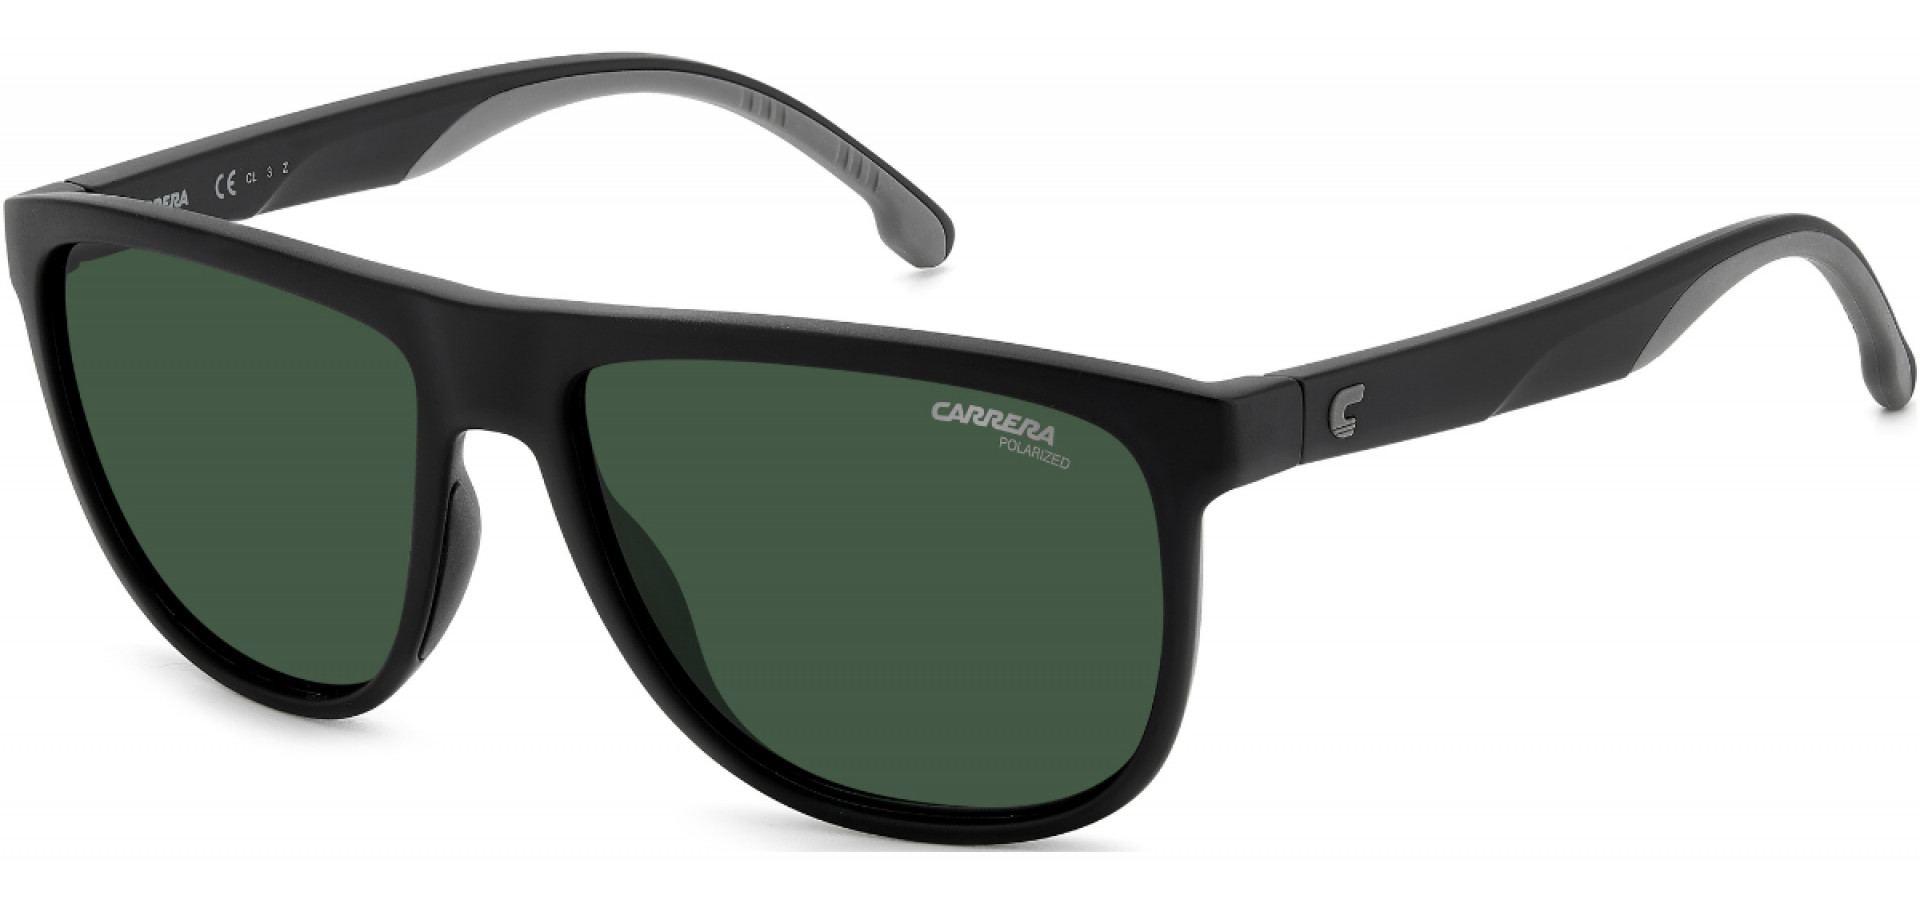 Sunčane naočale Carrera CARRERA 8059/S 3 58UC: Boja: Matte Black, Veličina: 58-16-145, Spol: muške, Materijal: poliamid, Vrsta leće: polarizirane